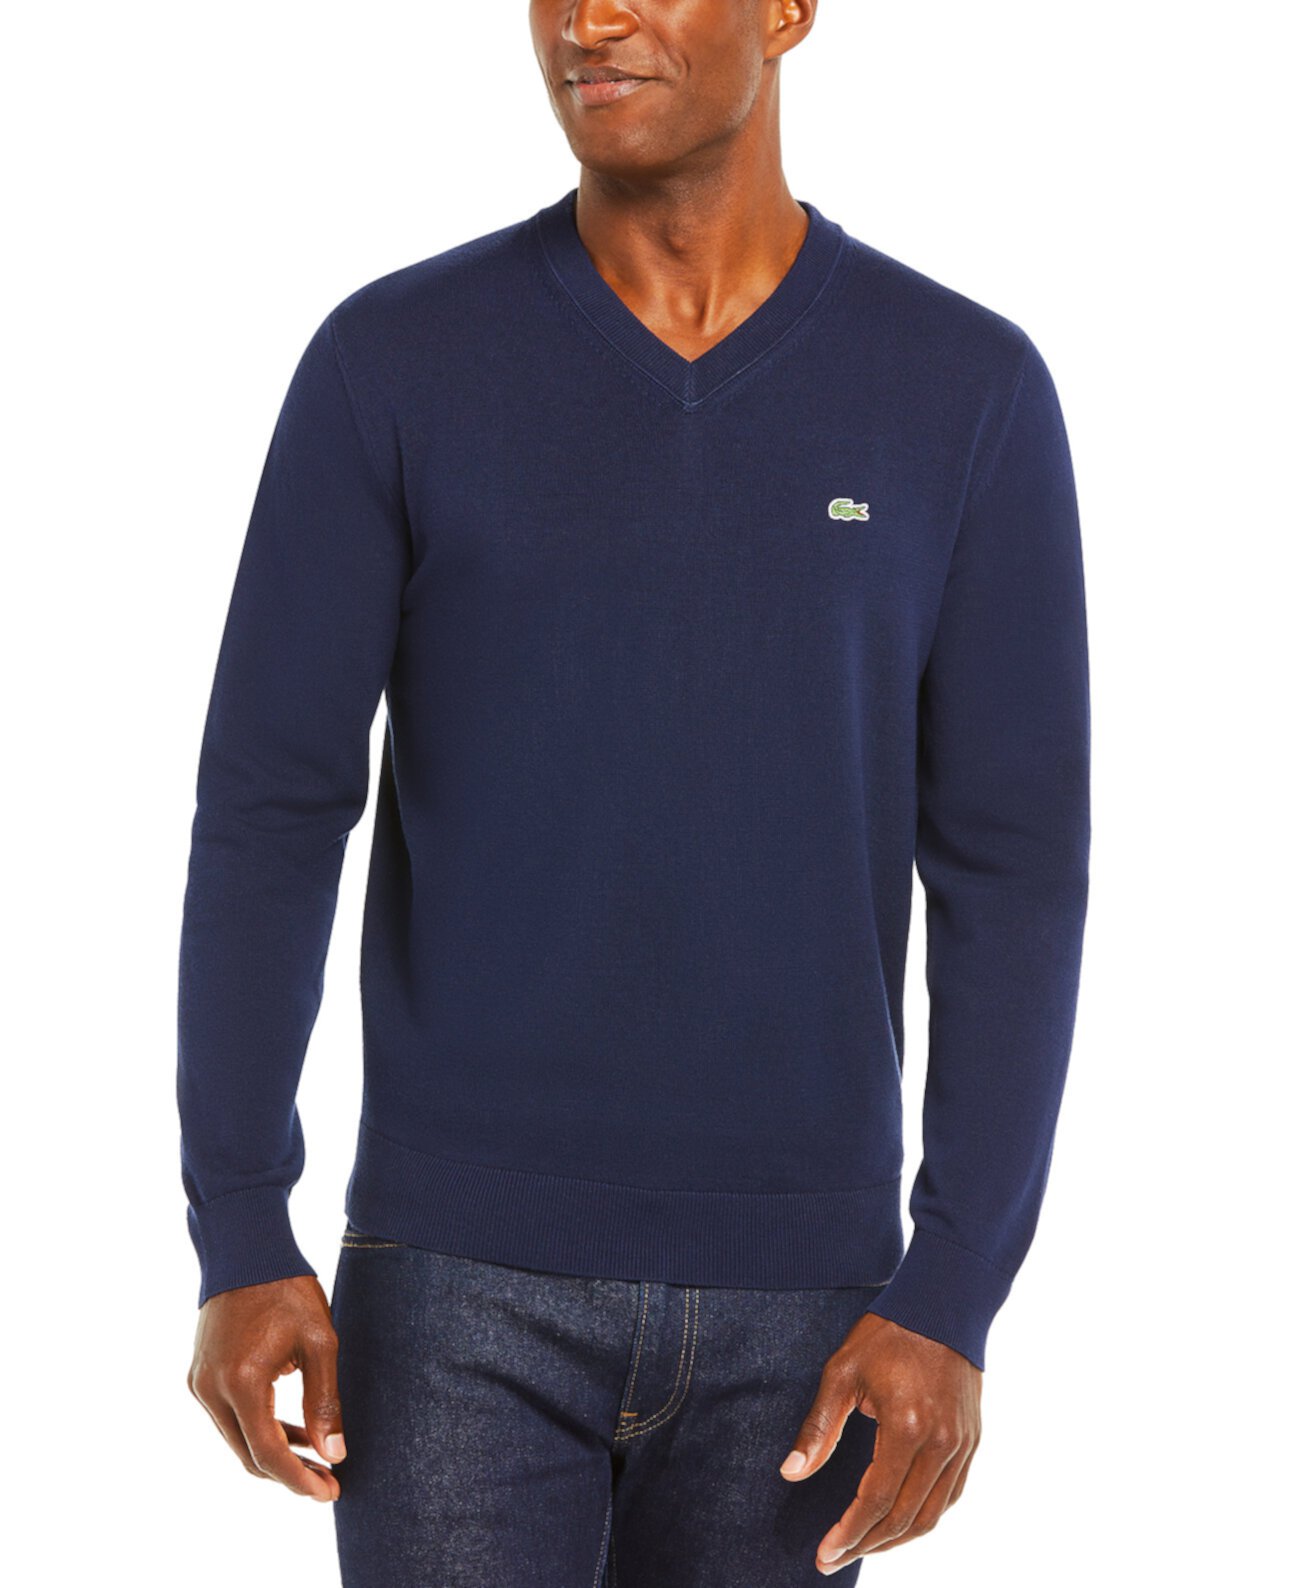 Хлопковый мужской свитер с V-образным вырезом Lacoste